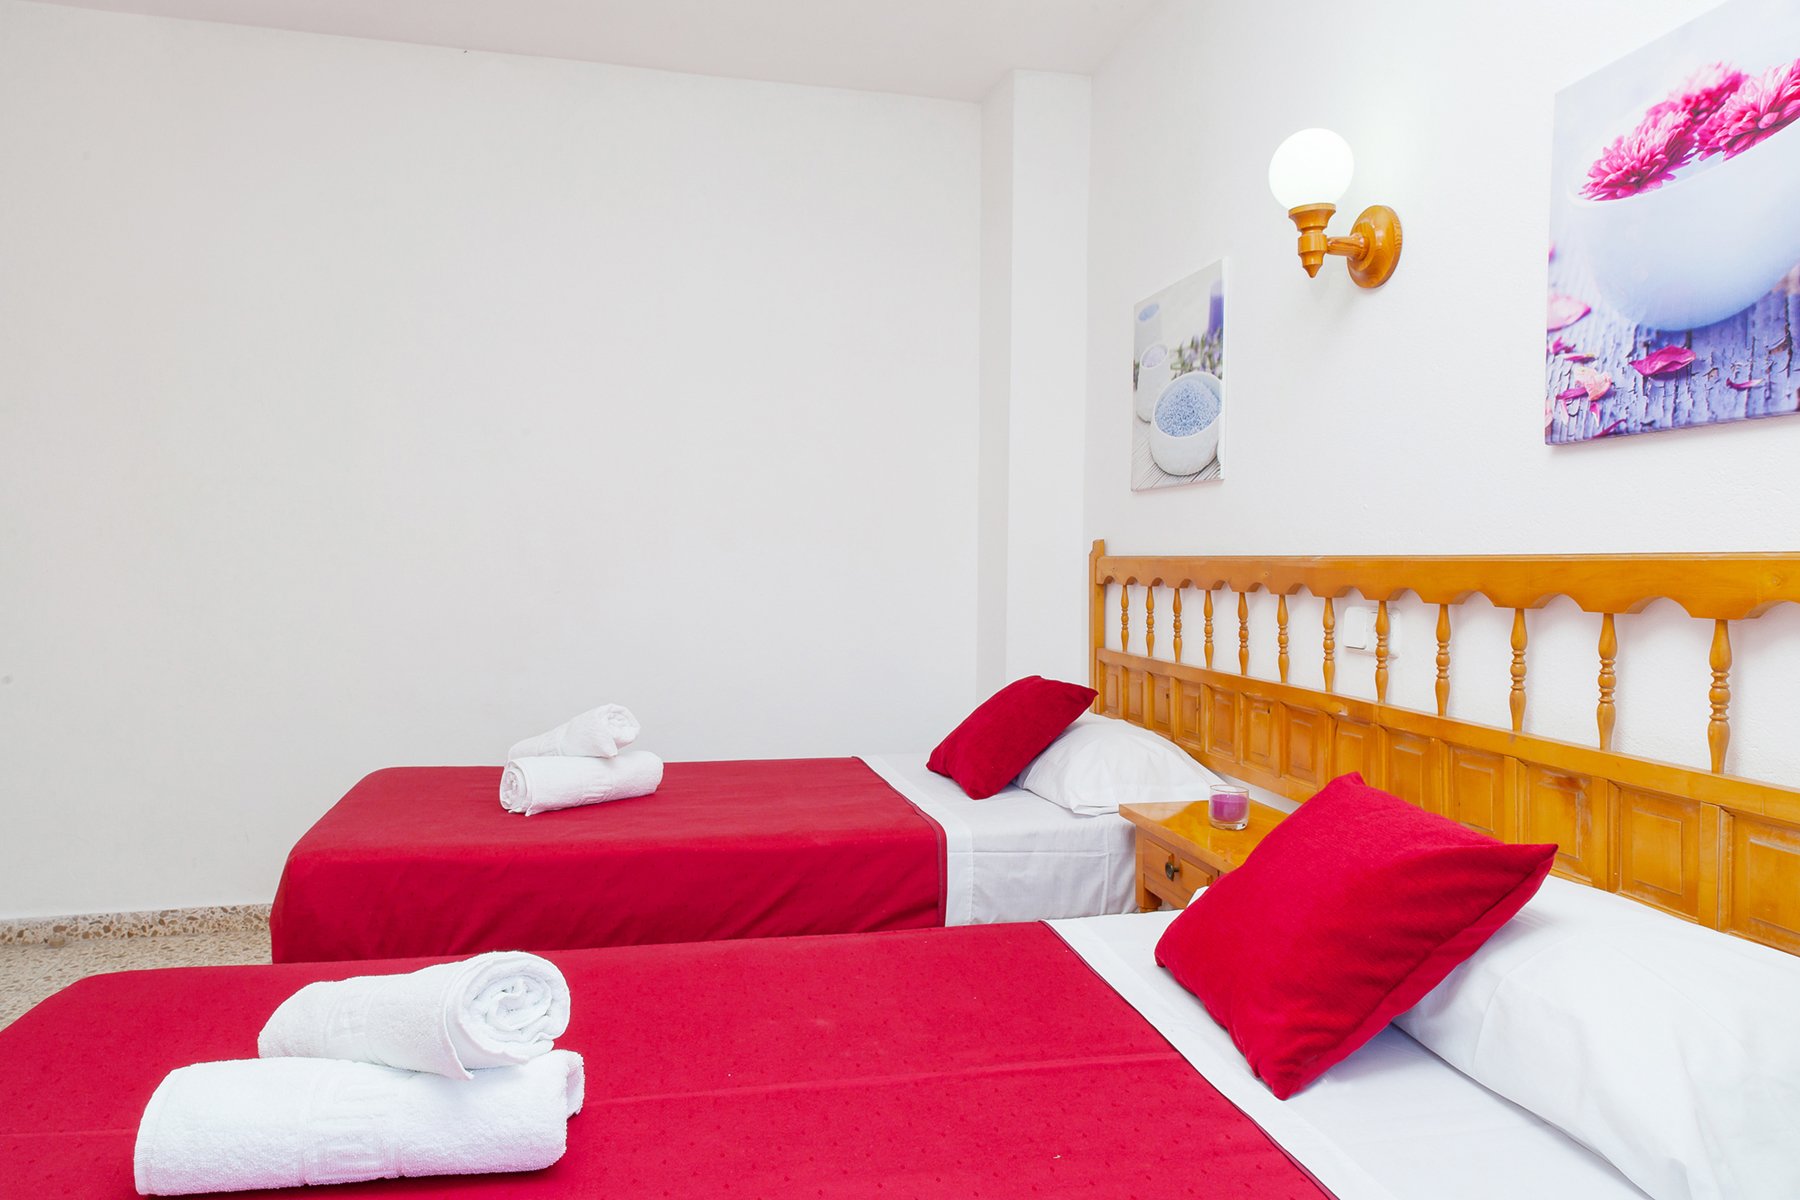 Apartamentos Puet - Image Gallery of rooms, hotel services, pool, breakfasts